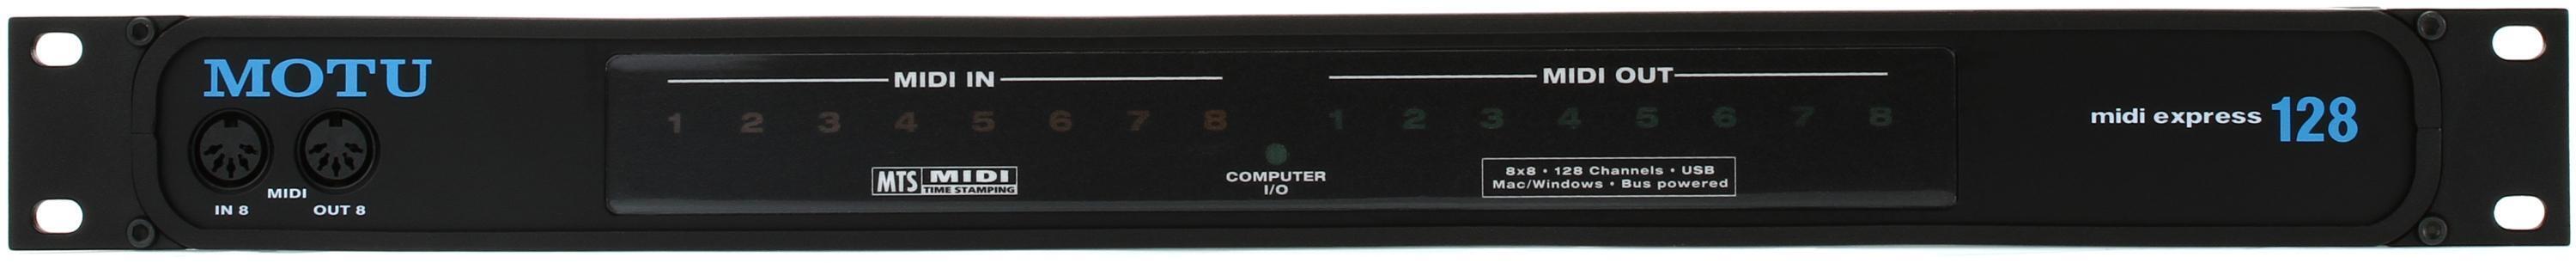 MOTU MIDI Express 128 8x8 USB MIDI Interface